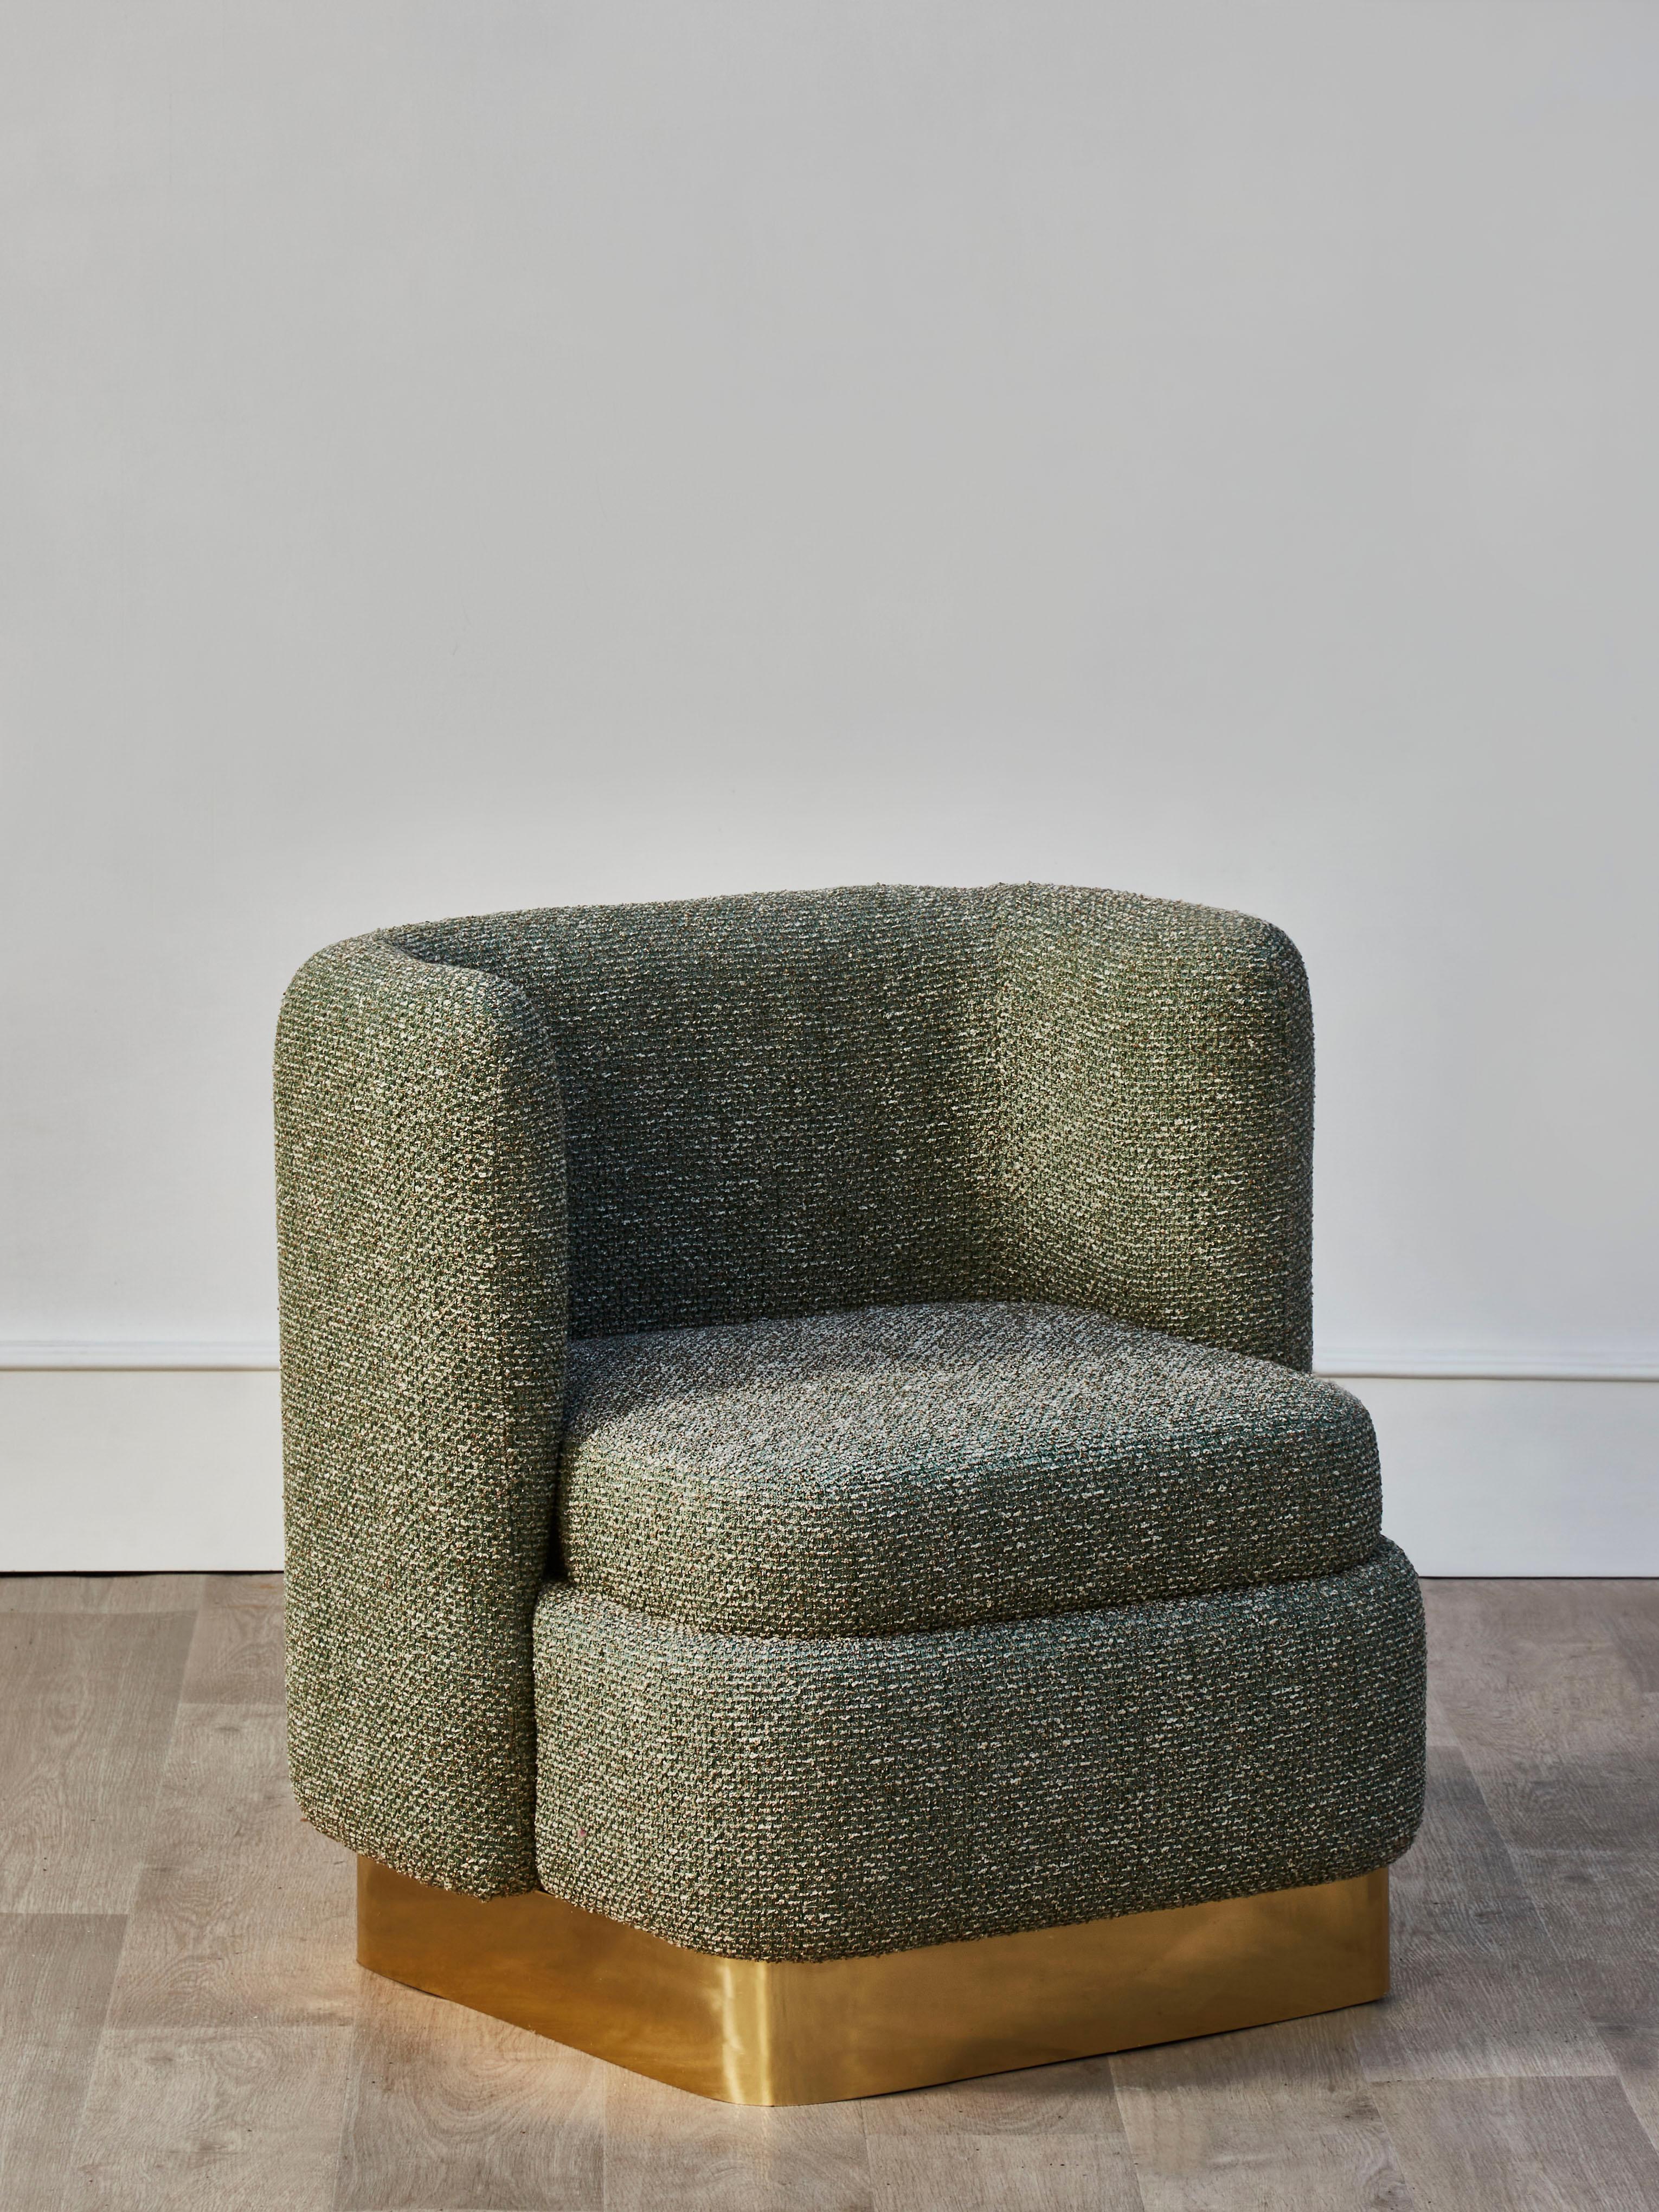 Schönes Sesselpaar mit Messinggestell, bezogen mit einem hochwertigen Stoff von Pierre Frey.
Gestaltung durch Studio Glustin.